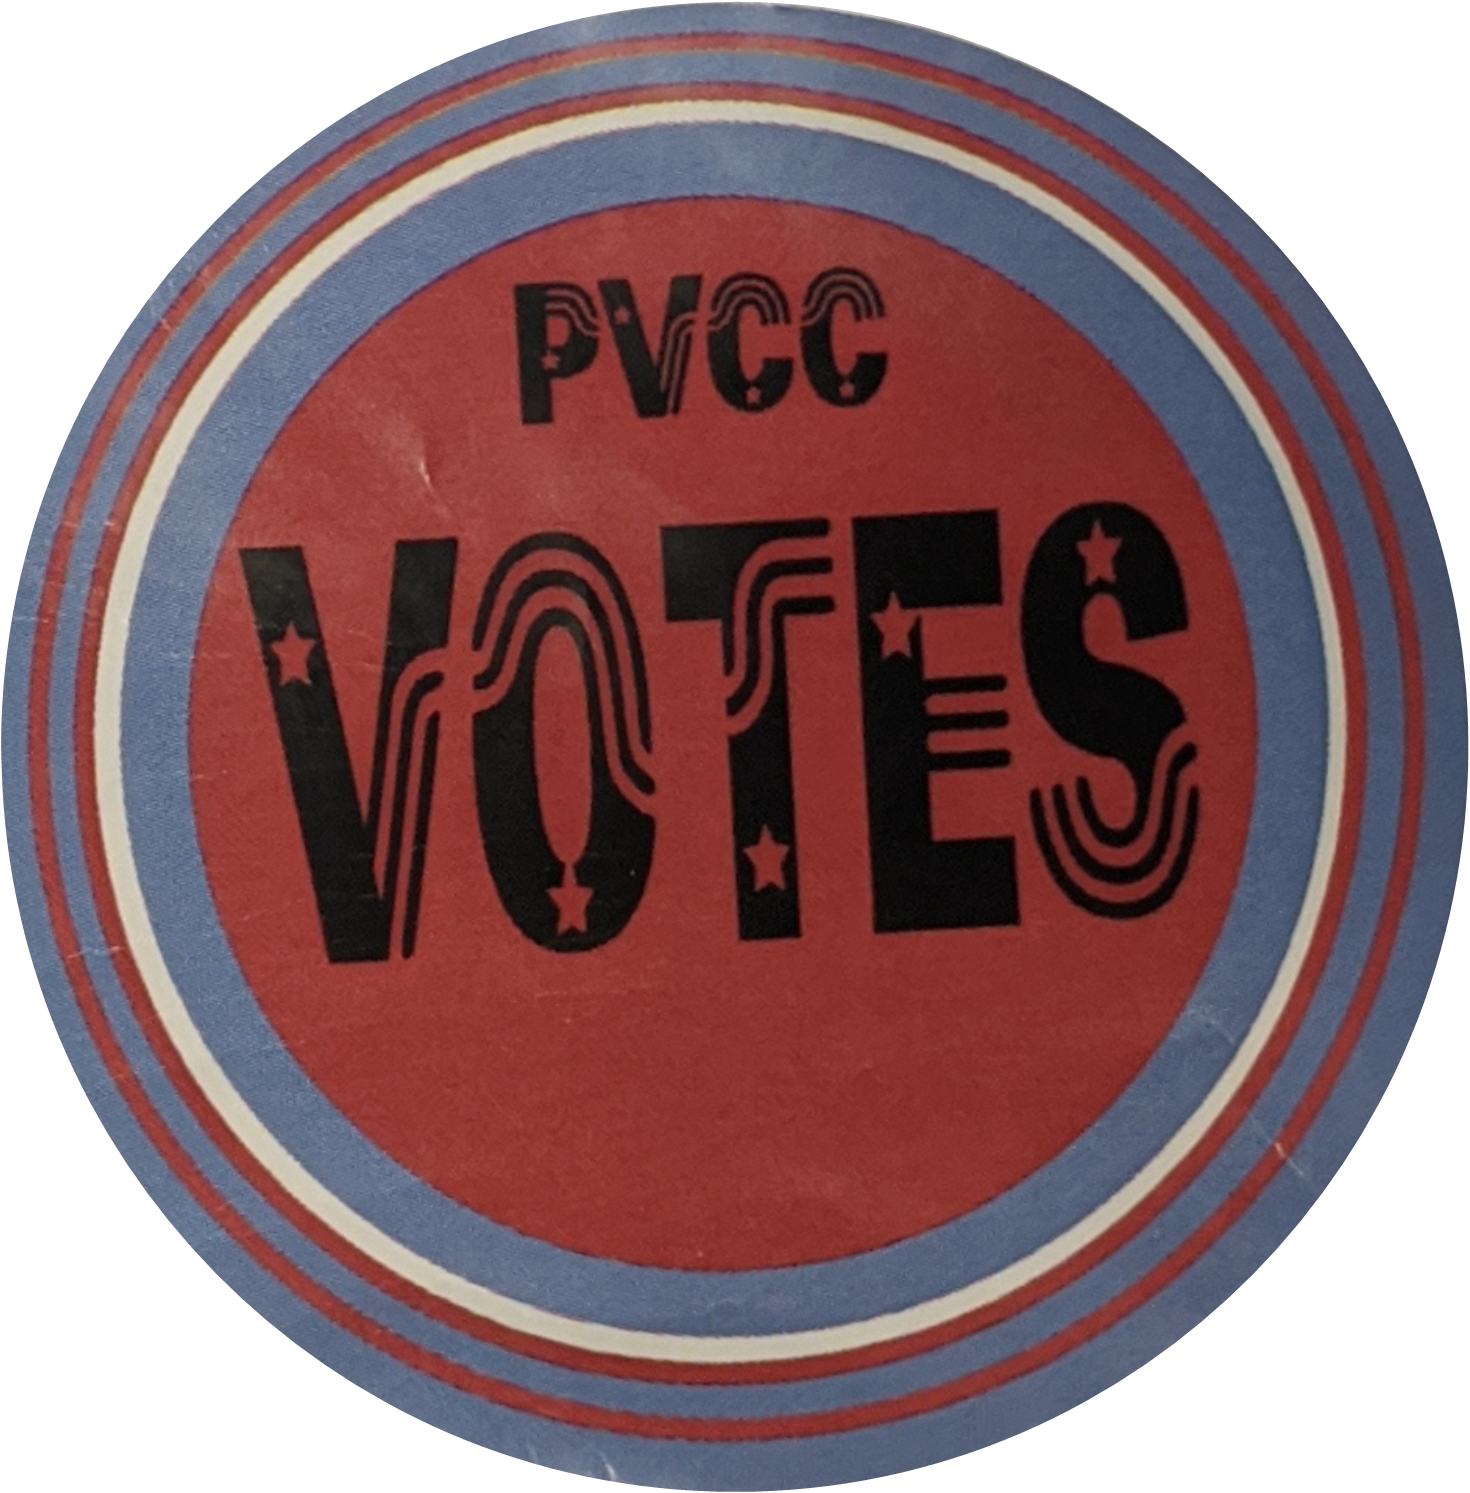 PVCC votes sticker